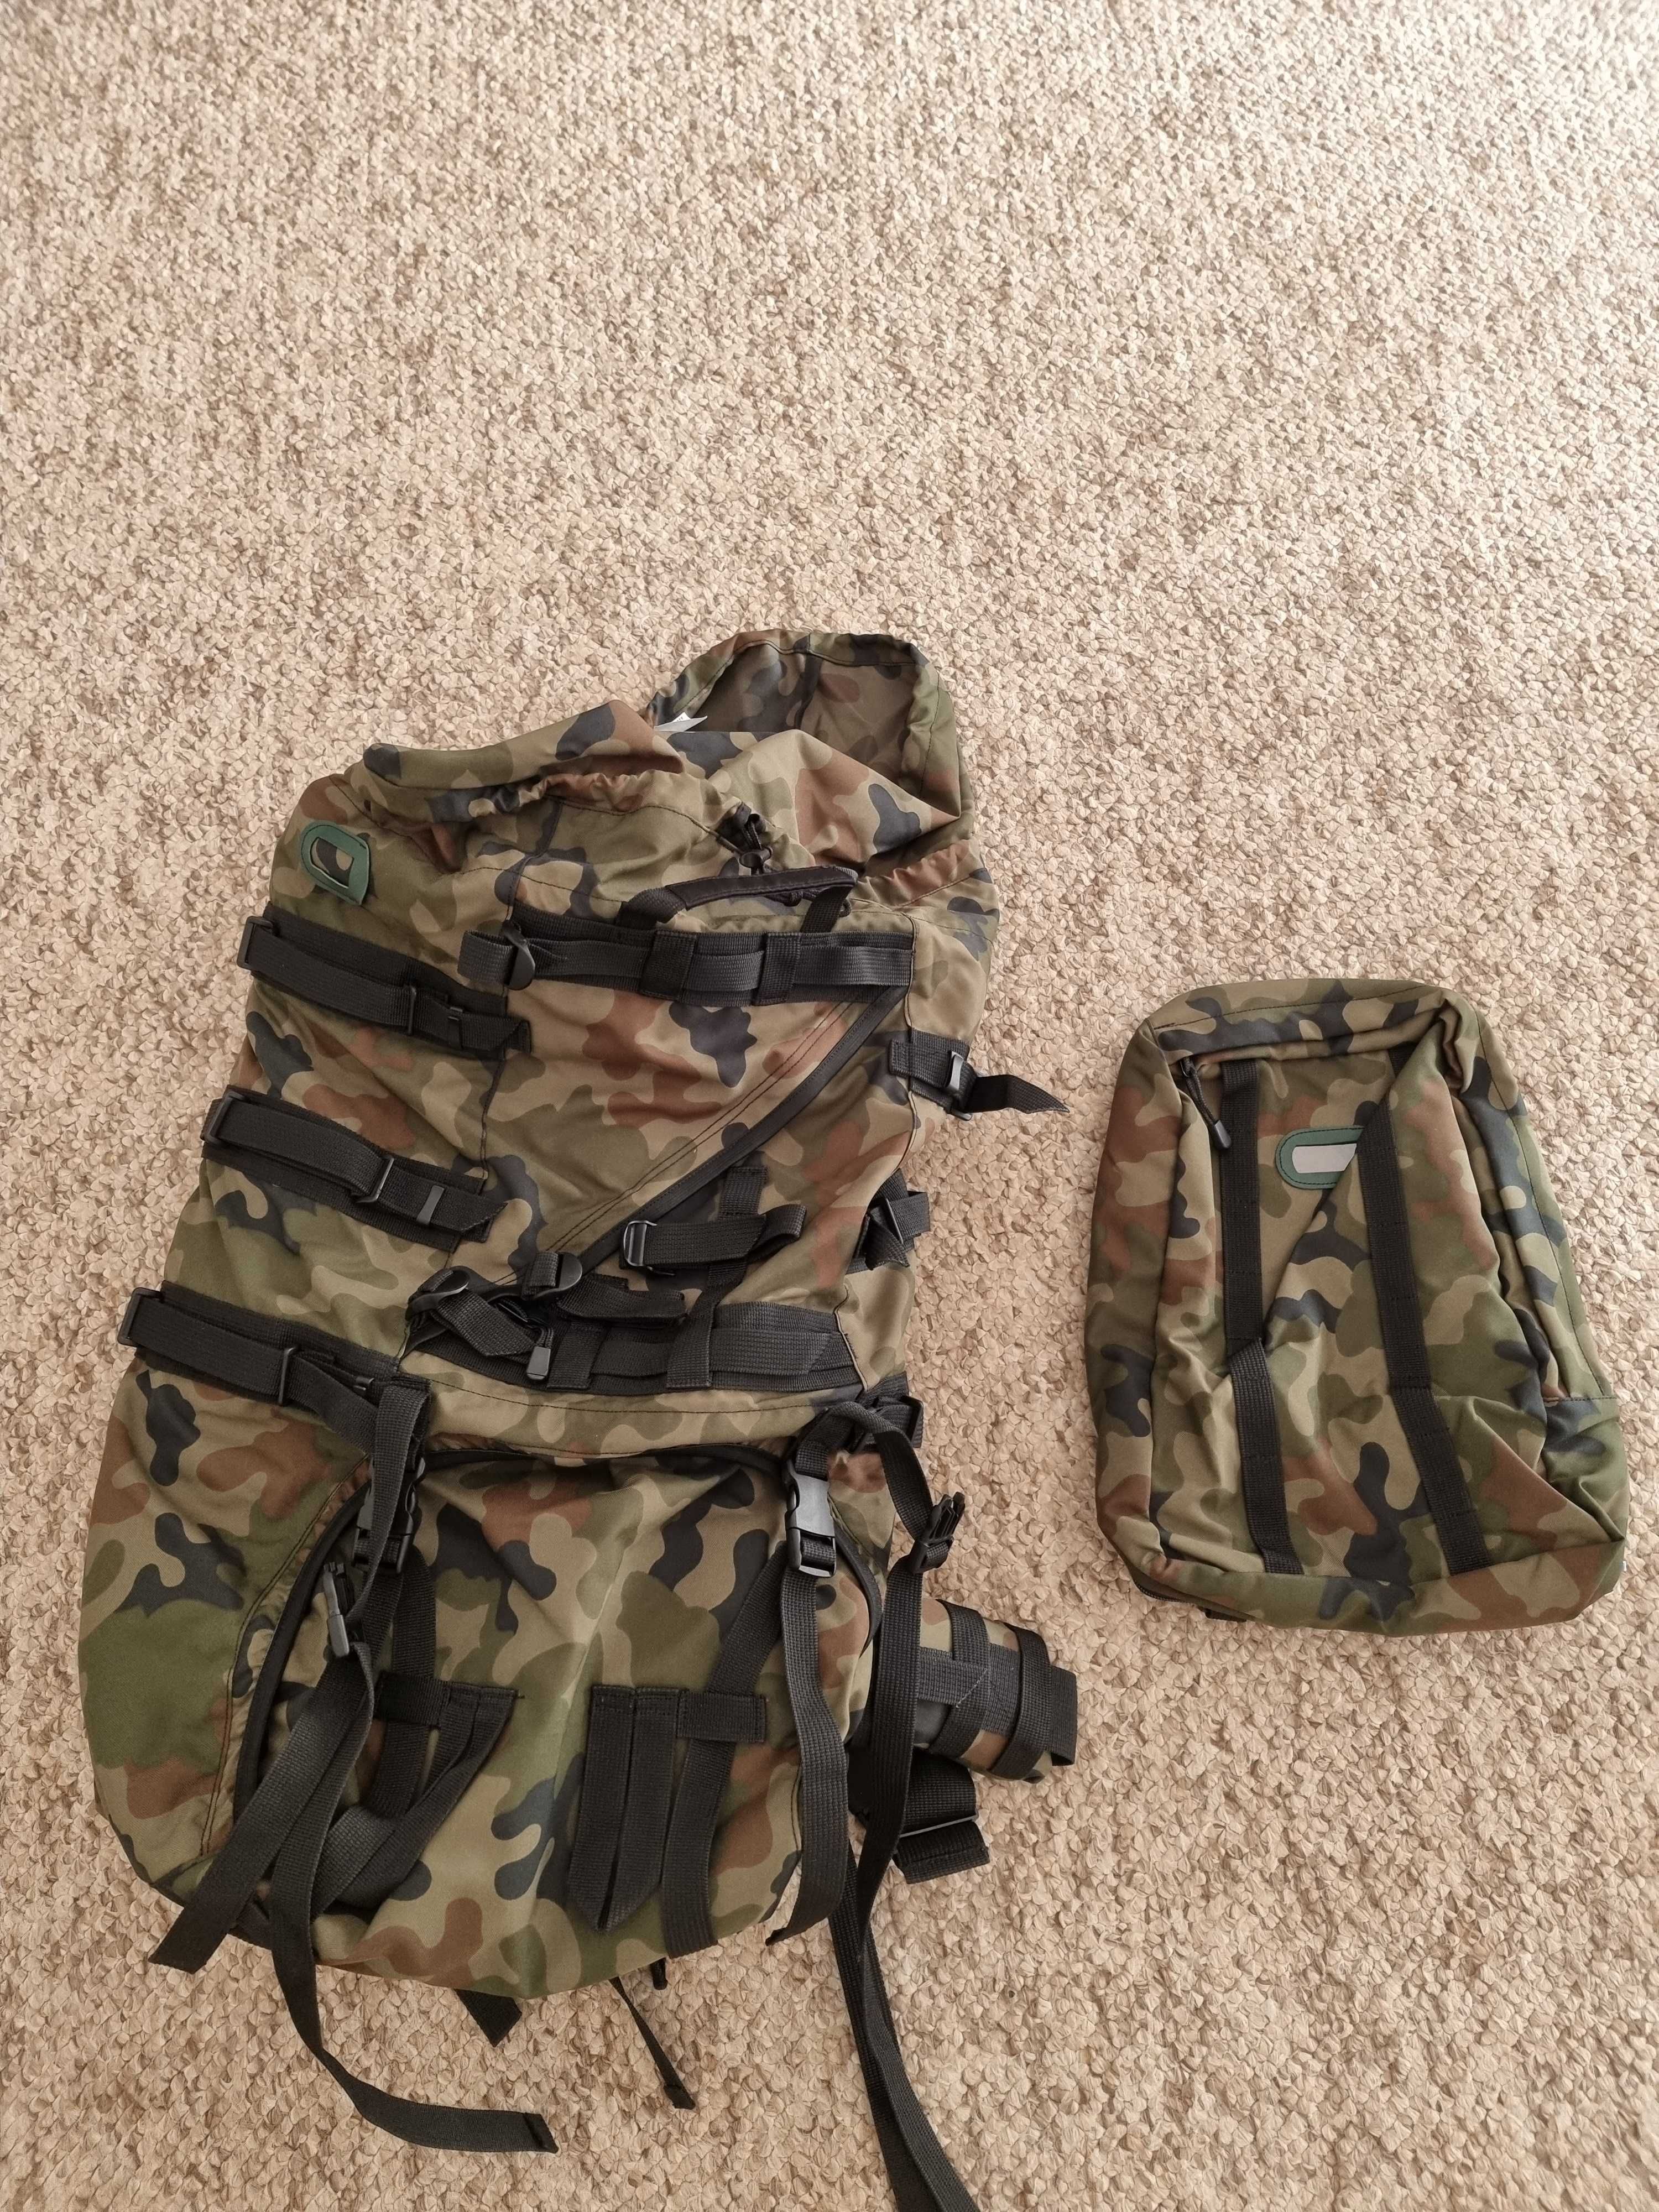 plecak Piechoty górskiej duży i mały w komplecie